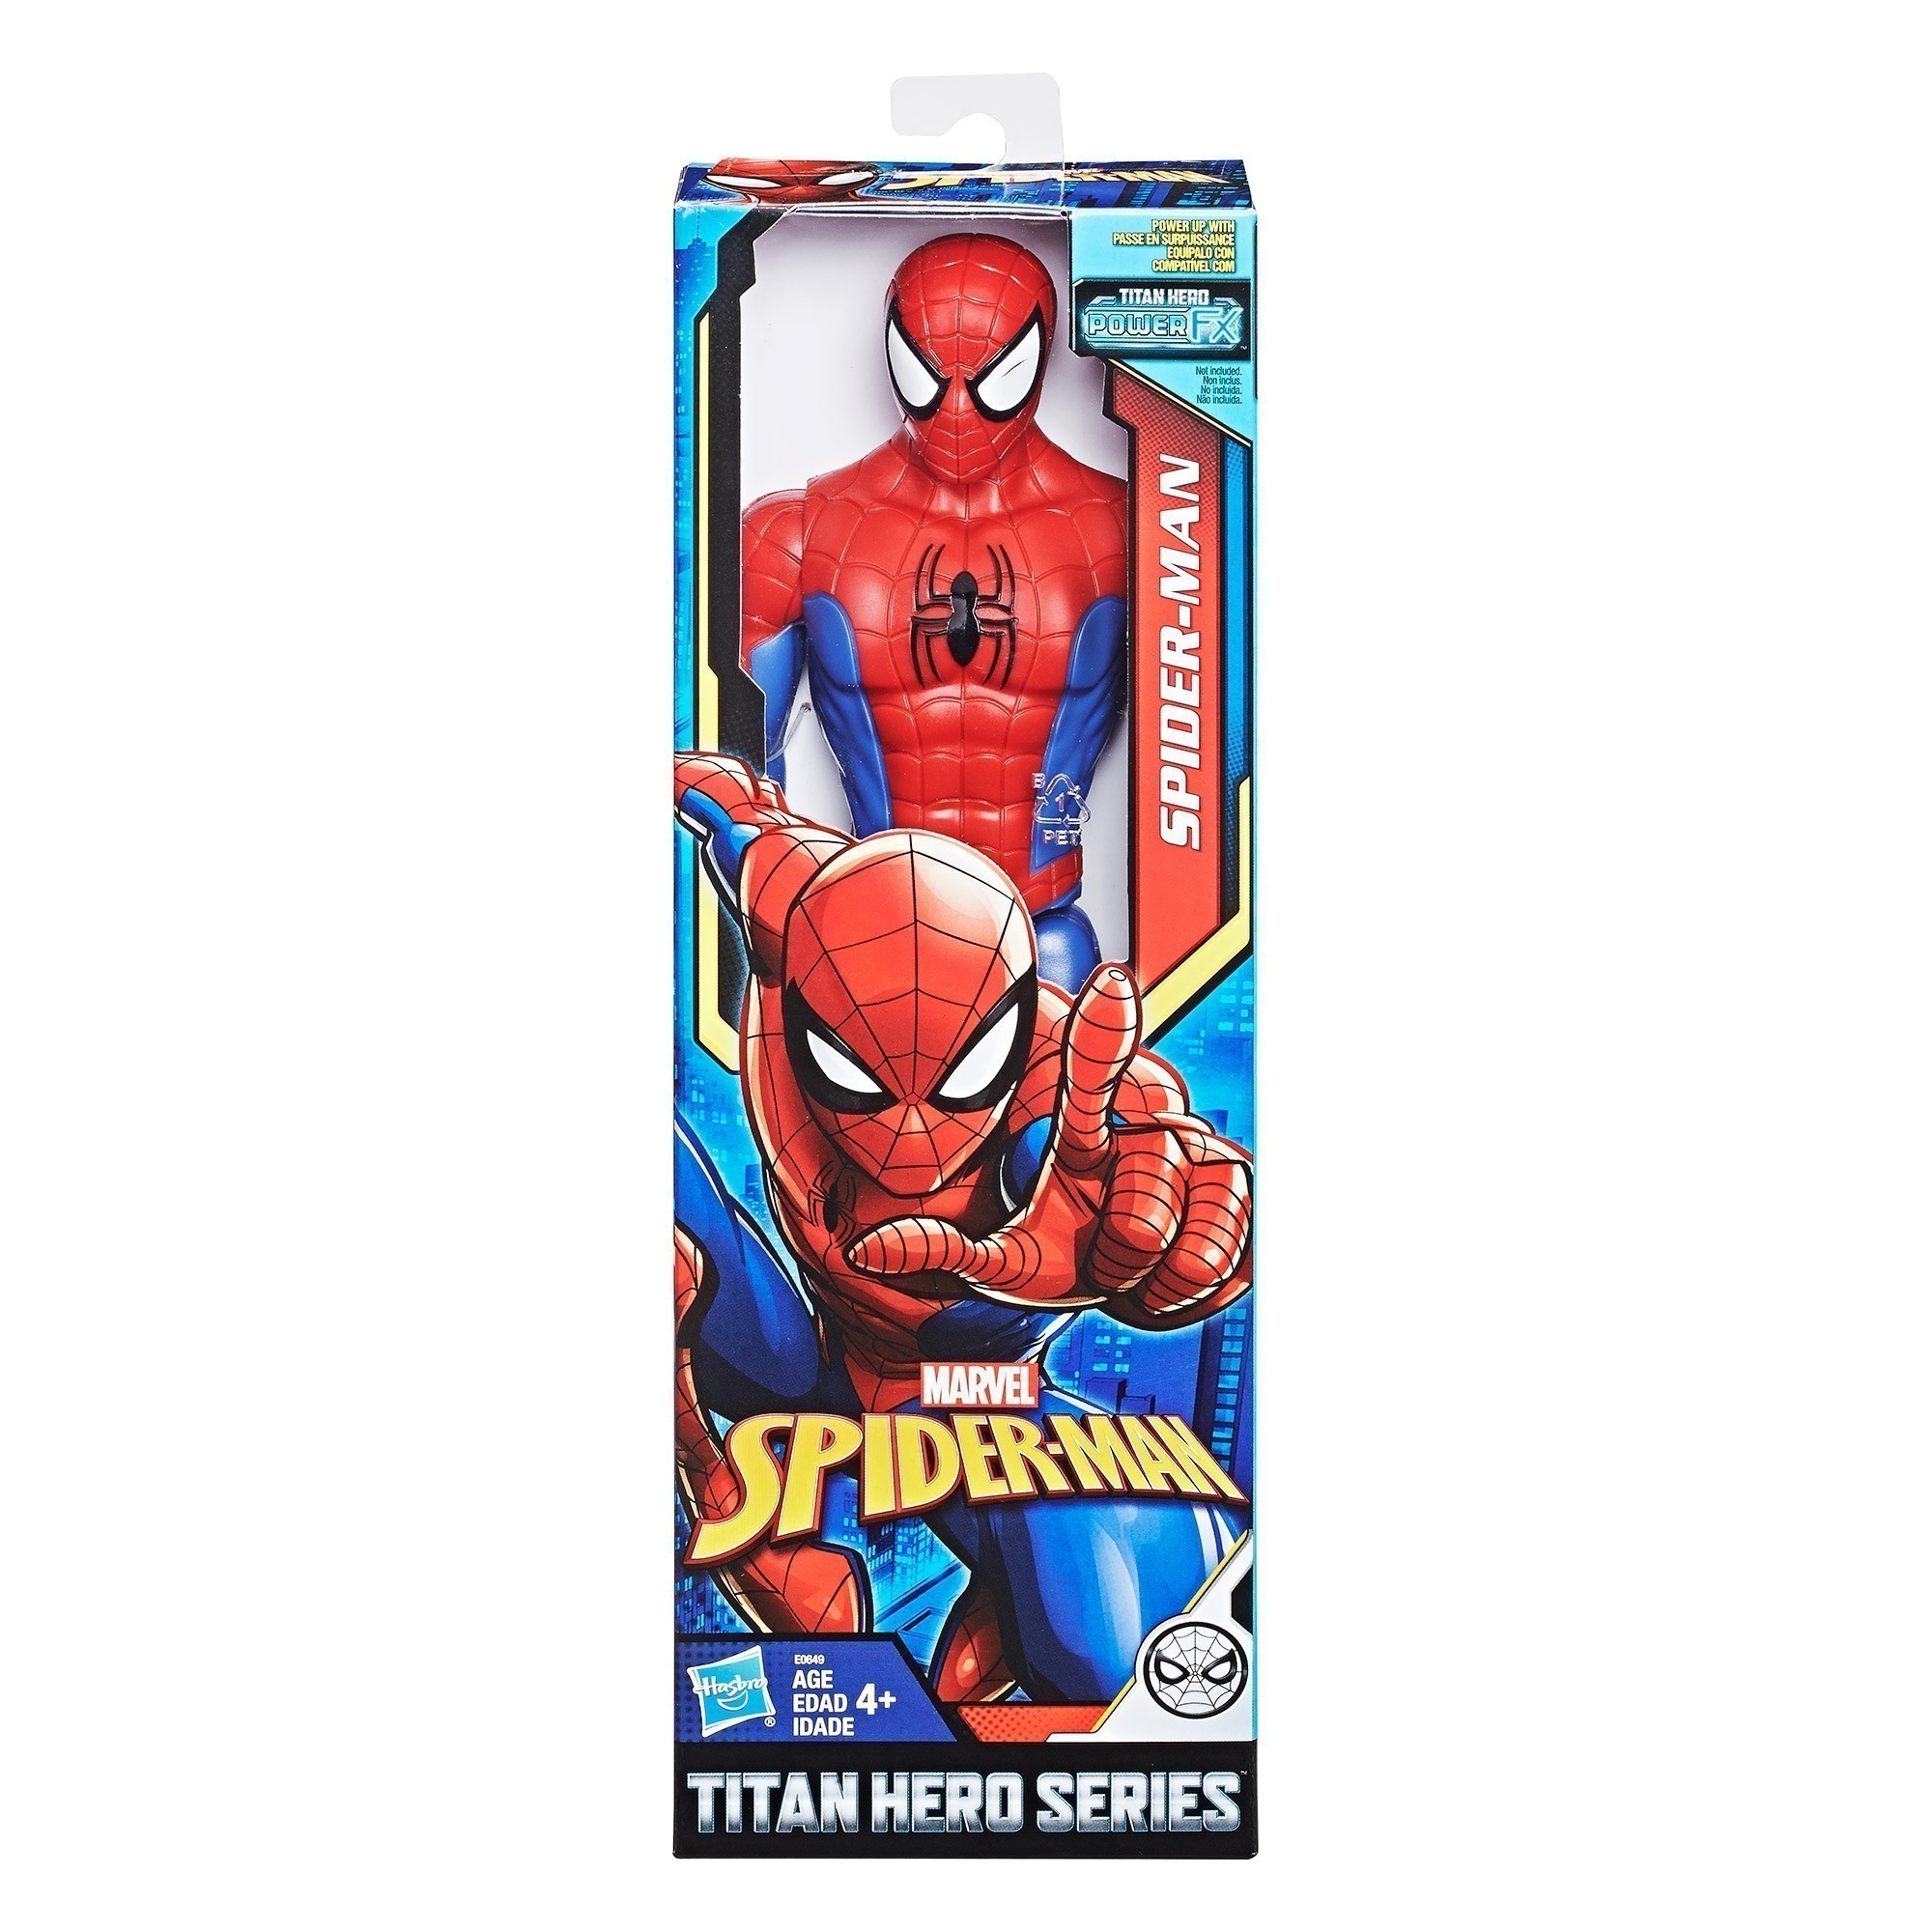 Spider-Man - Titan Hero Series - 30cm Spider-Man Figure